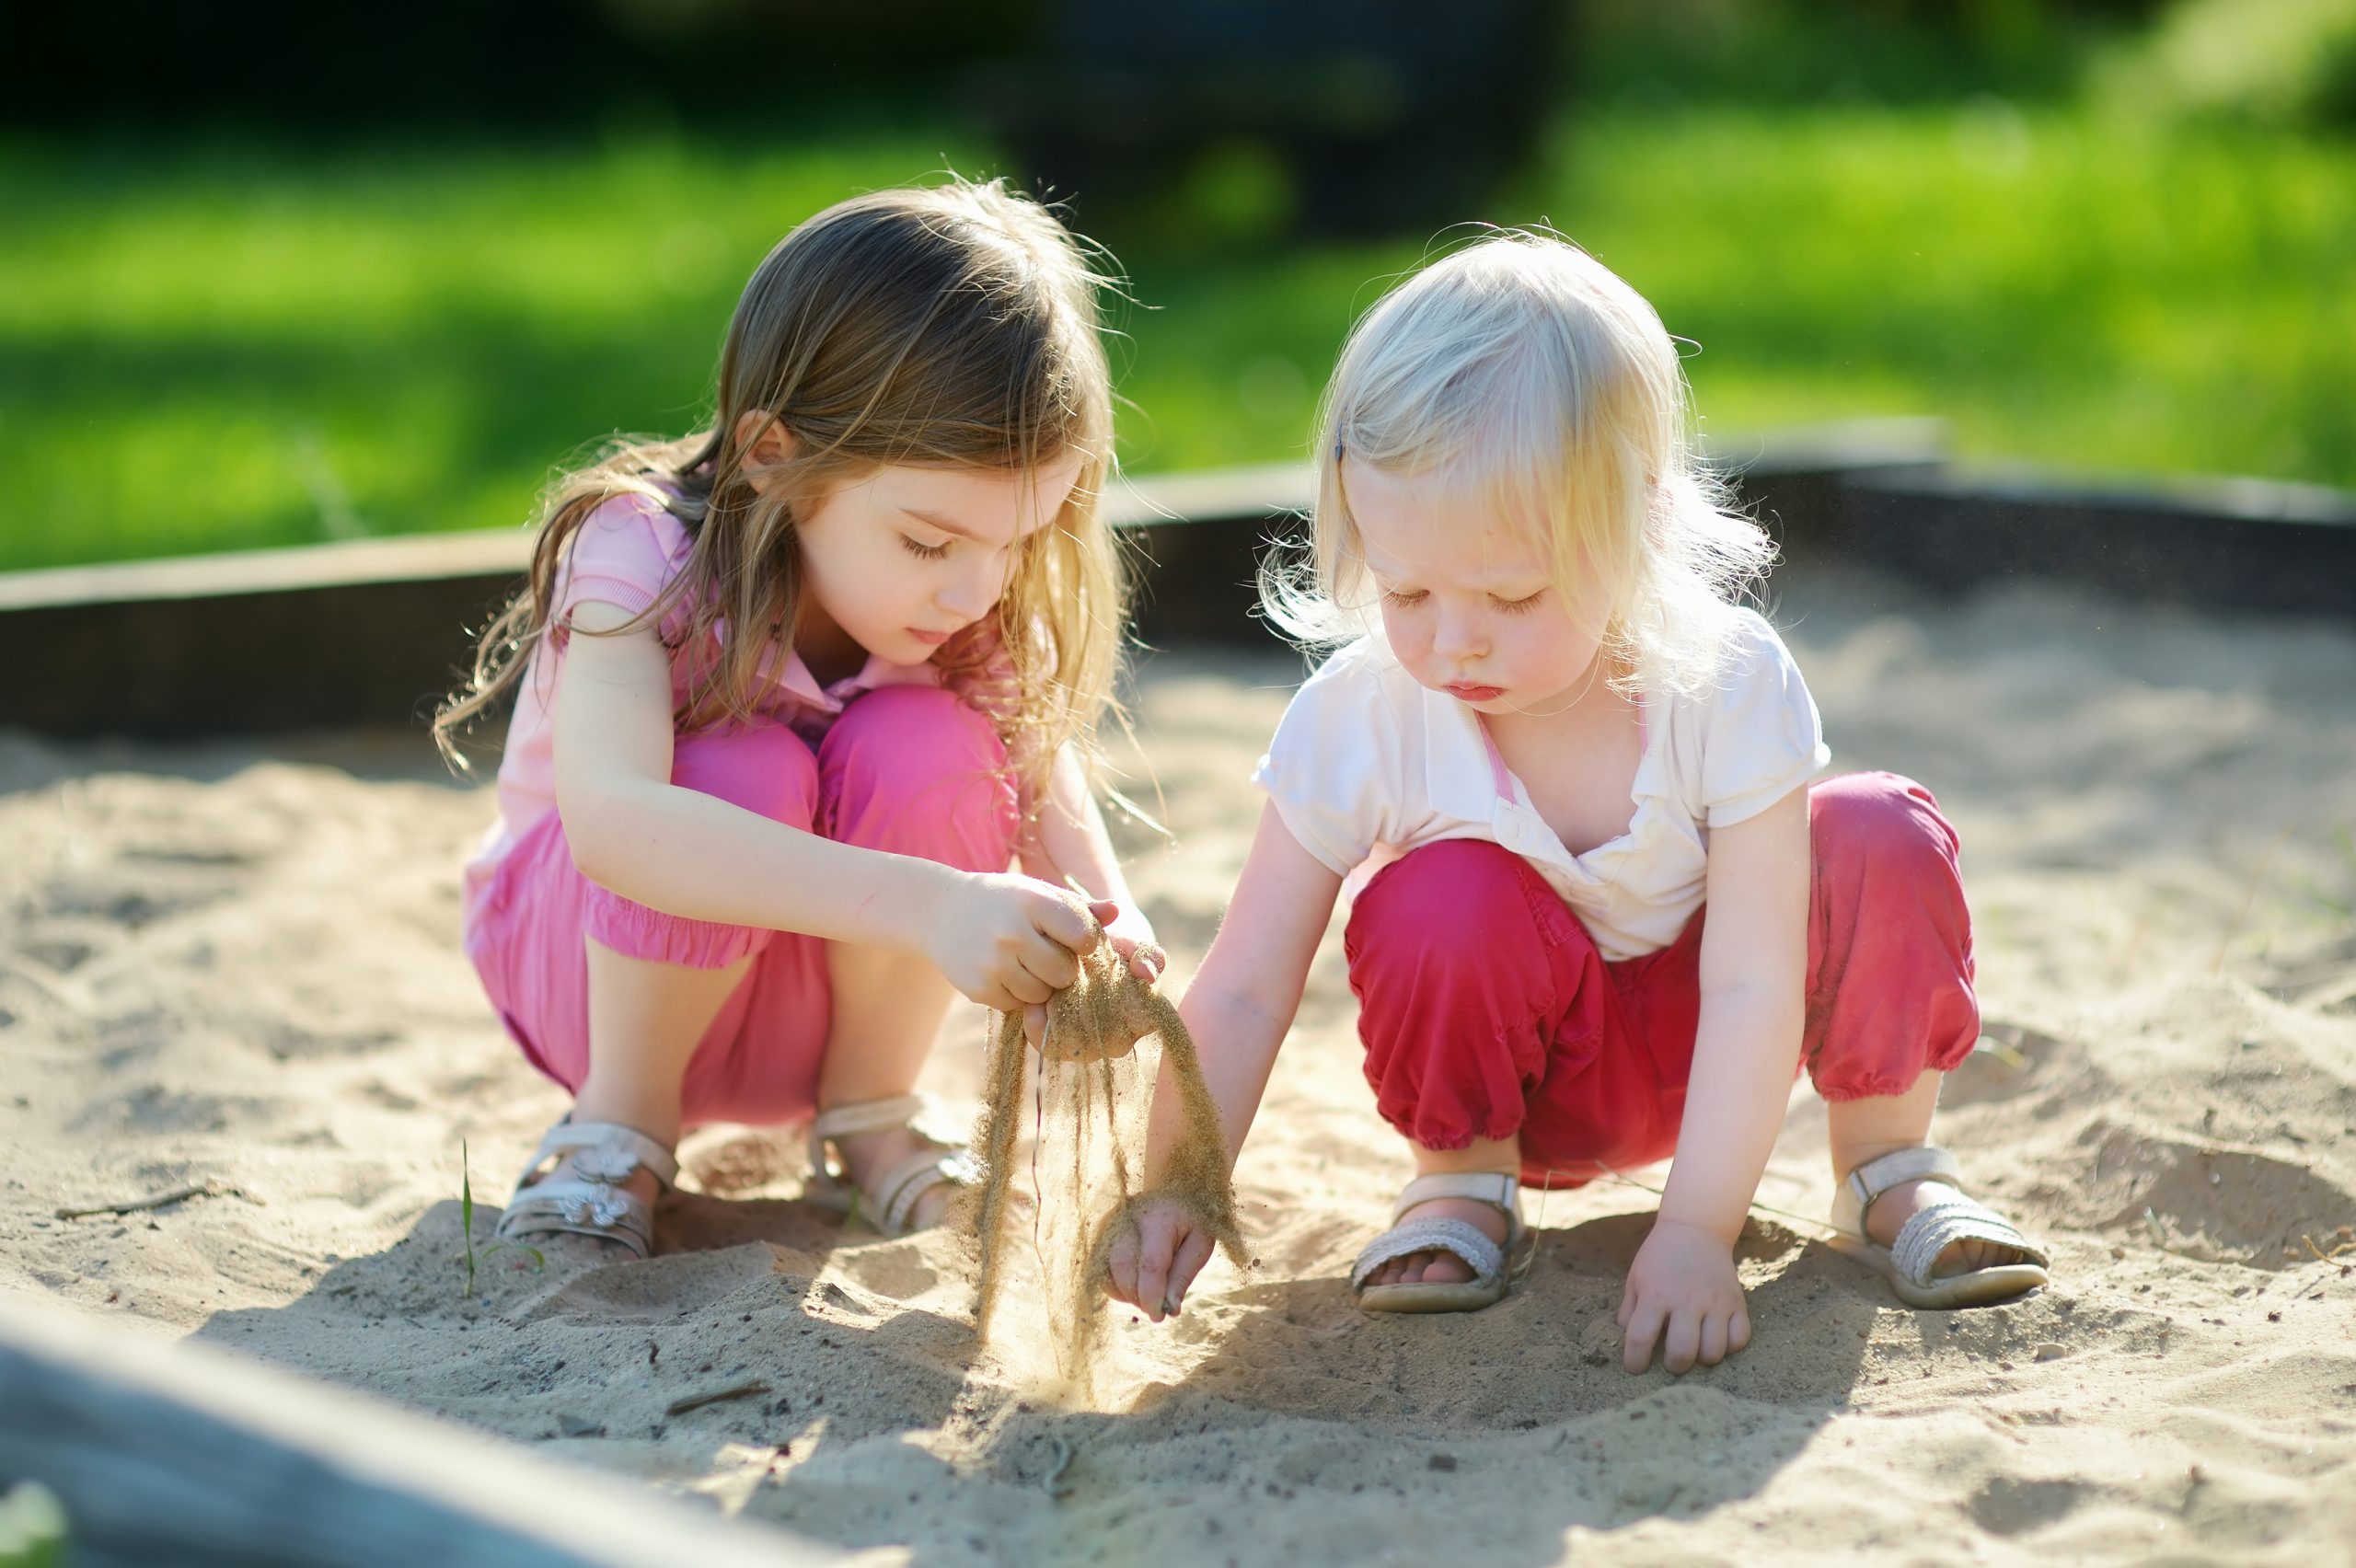 Детки играют с кисками. Девочка в песочнице. Дети играют. Играющие дети. Дети на детской площадке.